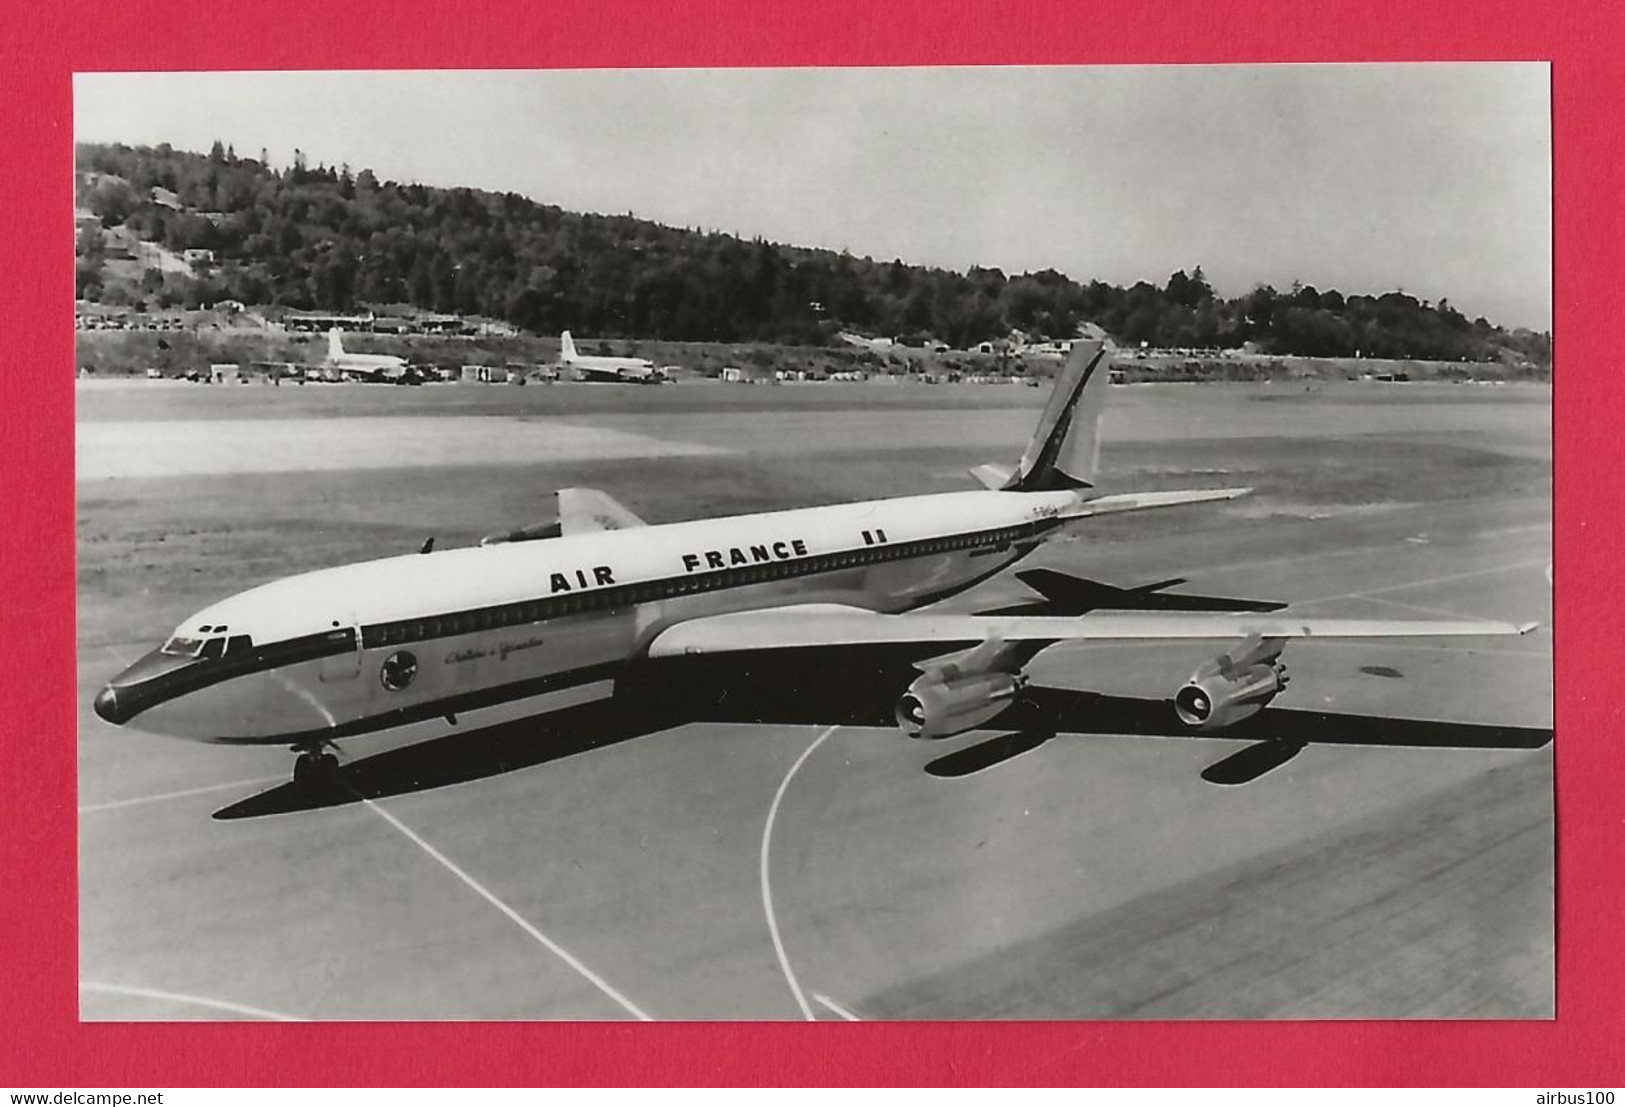 BELLE PHOTO REPRODUCTION AVION PLANE - AIR FRANCE BOEING 707-328A CHATEAU DE VERSAILLES F-BHSA - (1959 à 1961) - Luftfahrt